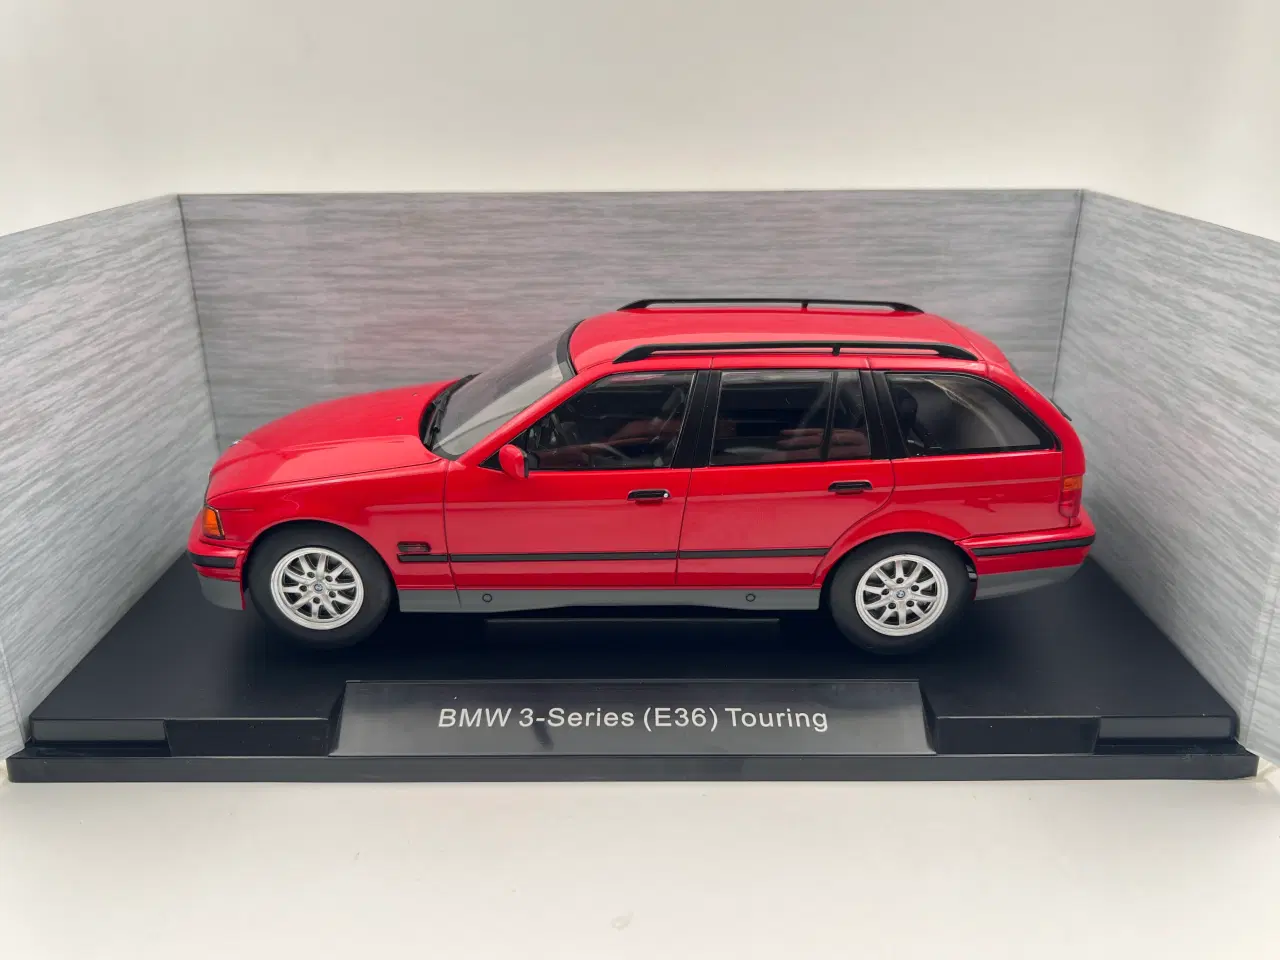 Billede 8 - 1995 BMW 320i Touring E36 1:18  Flot og detaljeret